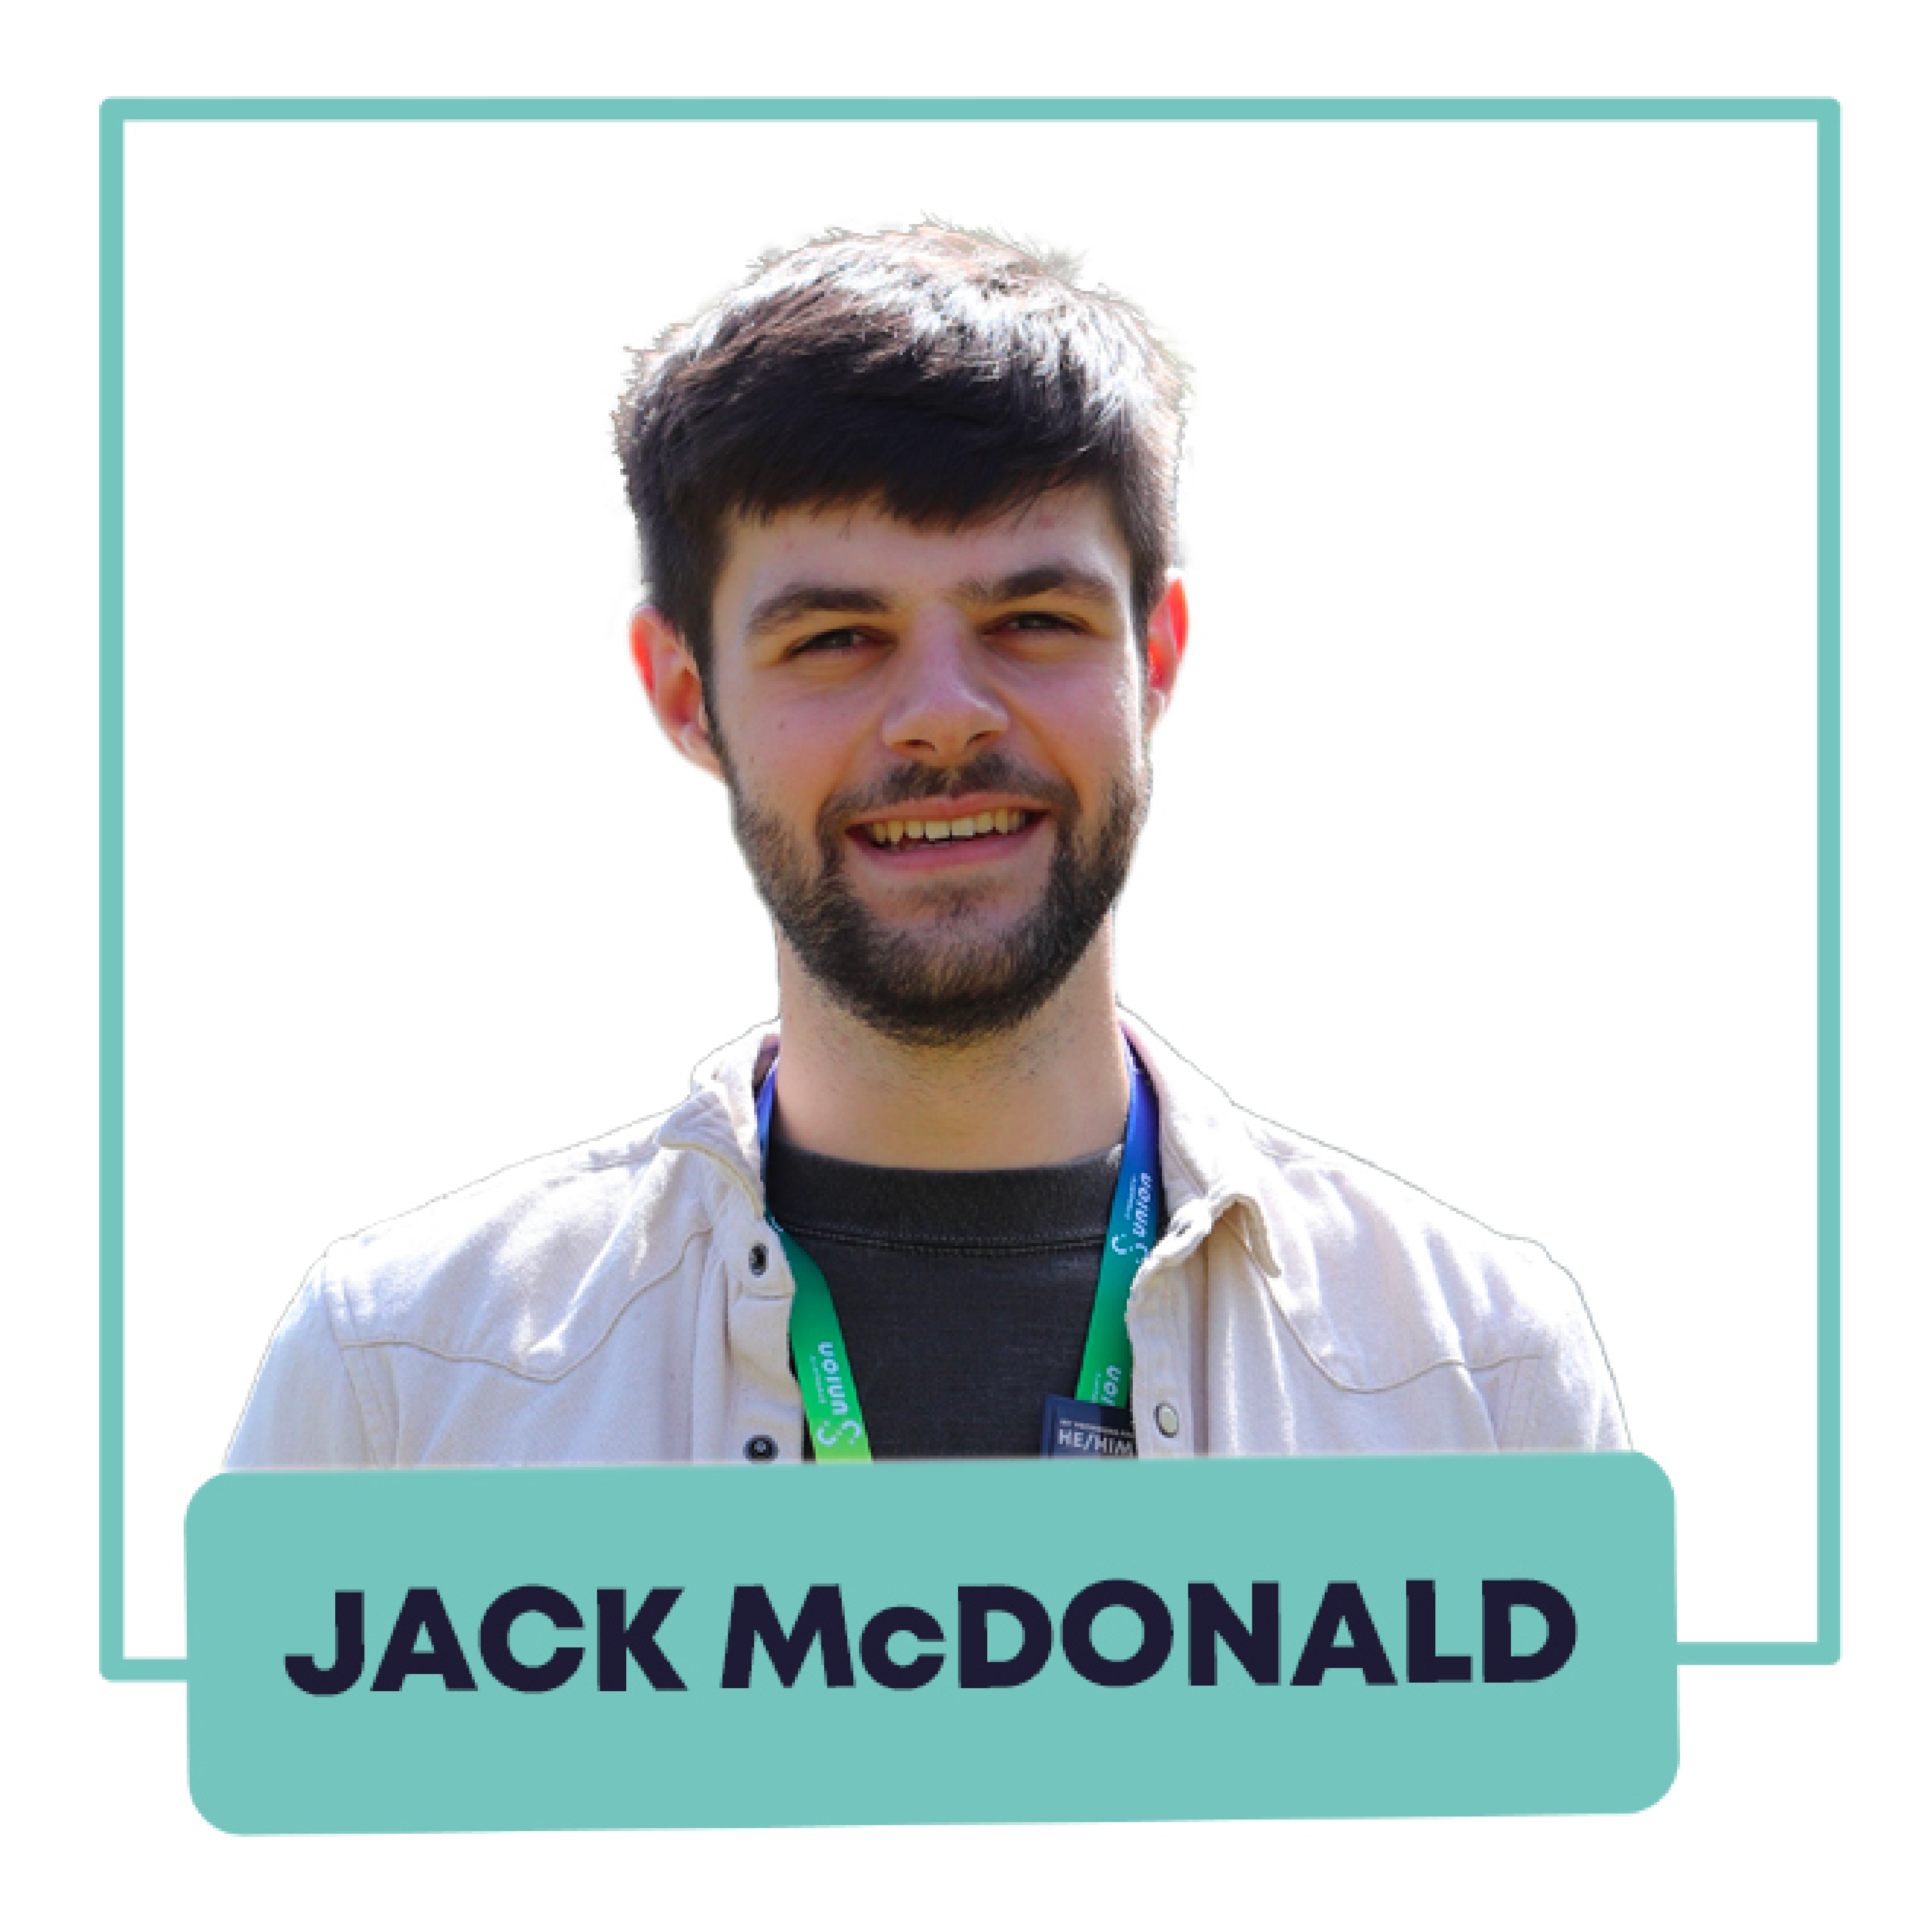 Jack McDonald, Activities Officer 2022/2023